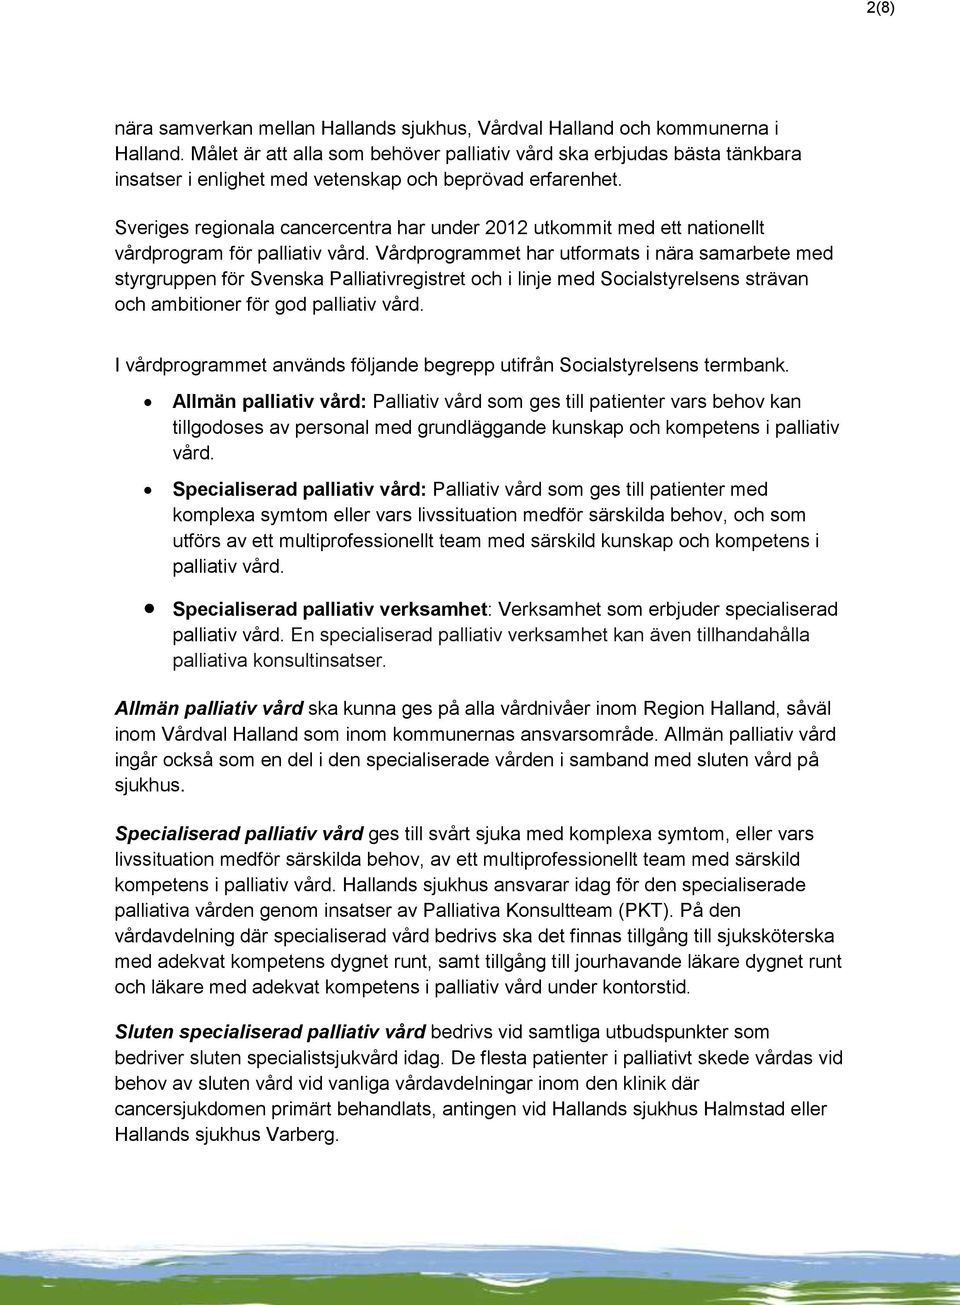 Sveriges regionala cancercentra har under 2012 utkommit med ett nationellt vårdprogram för palliativ vård.